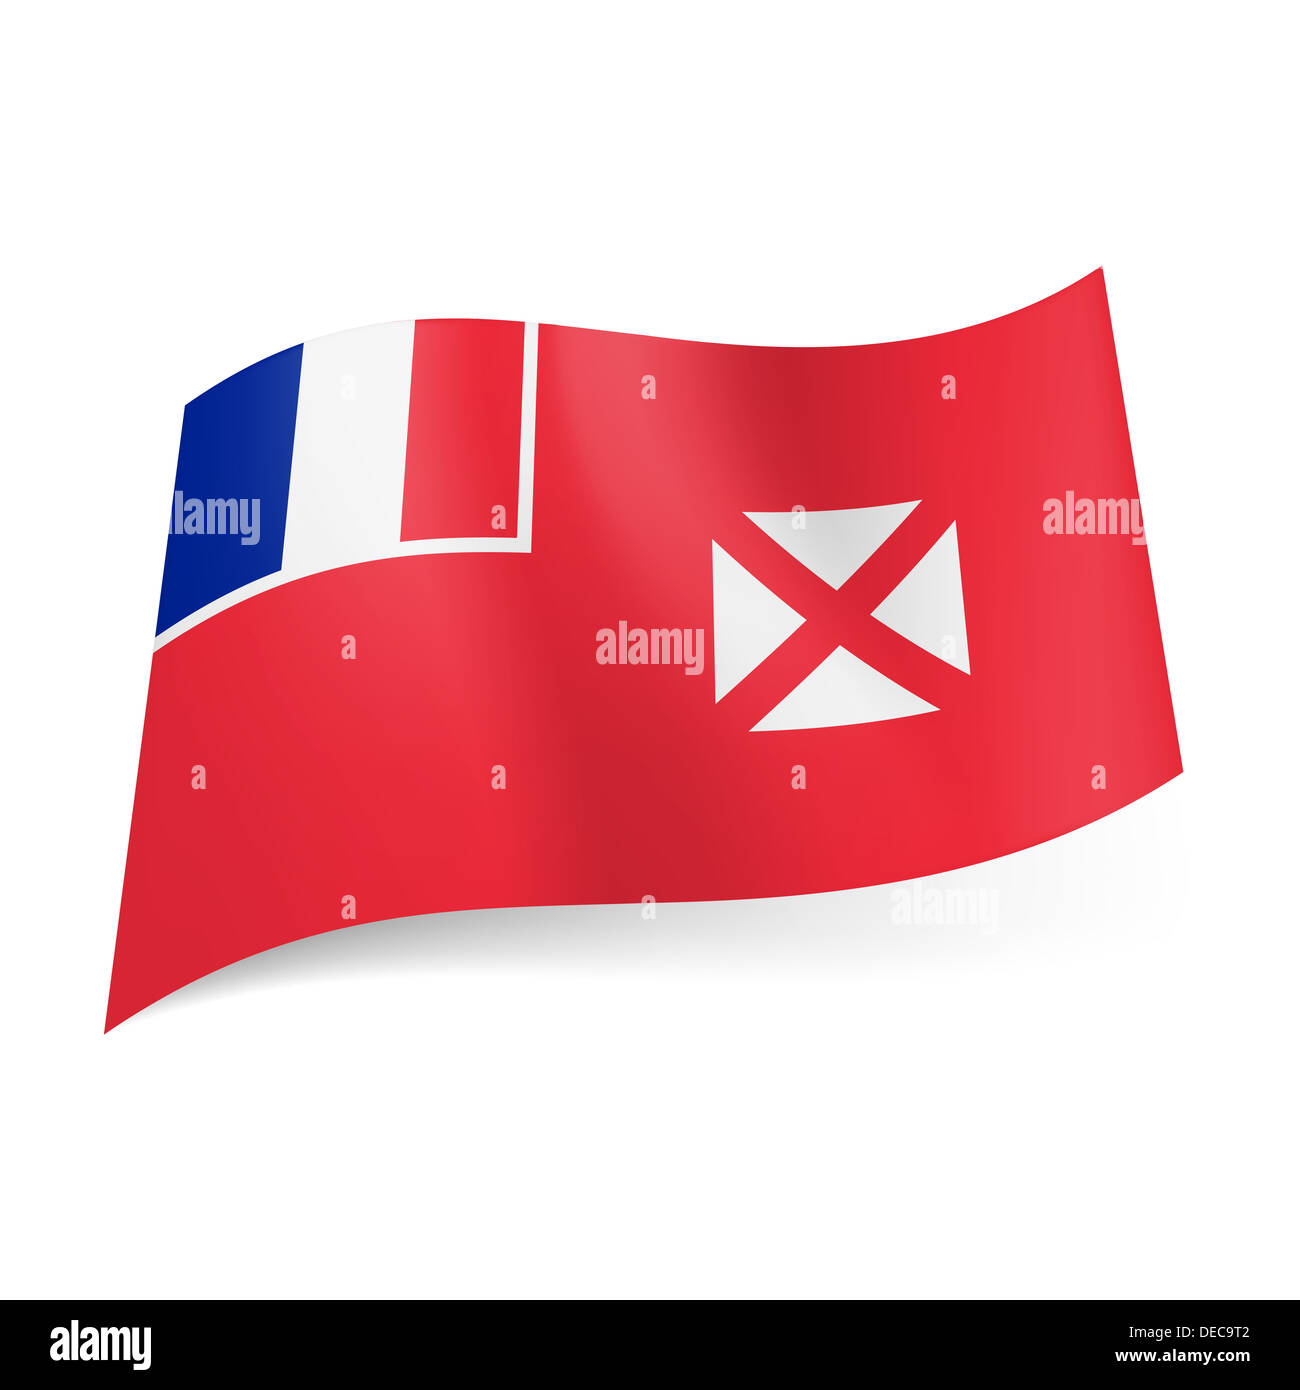 90 x 150 cm Fahne Flagge Wallis und Futuna Französisches Überseegebiet 